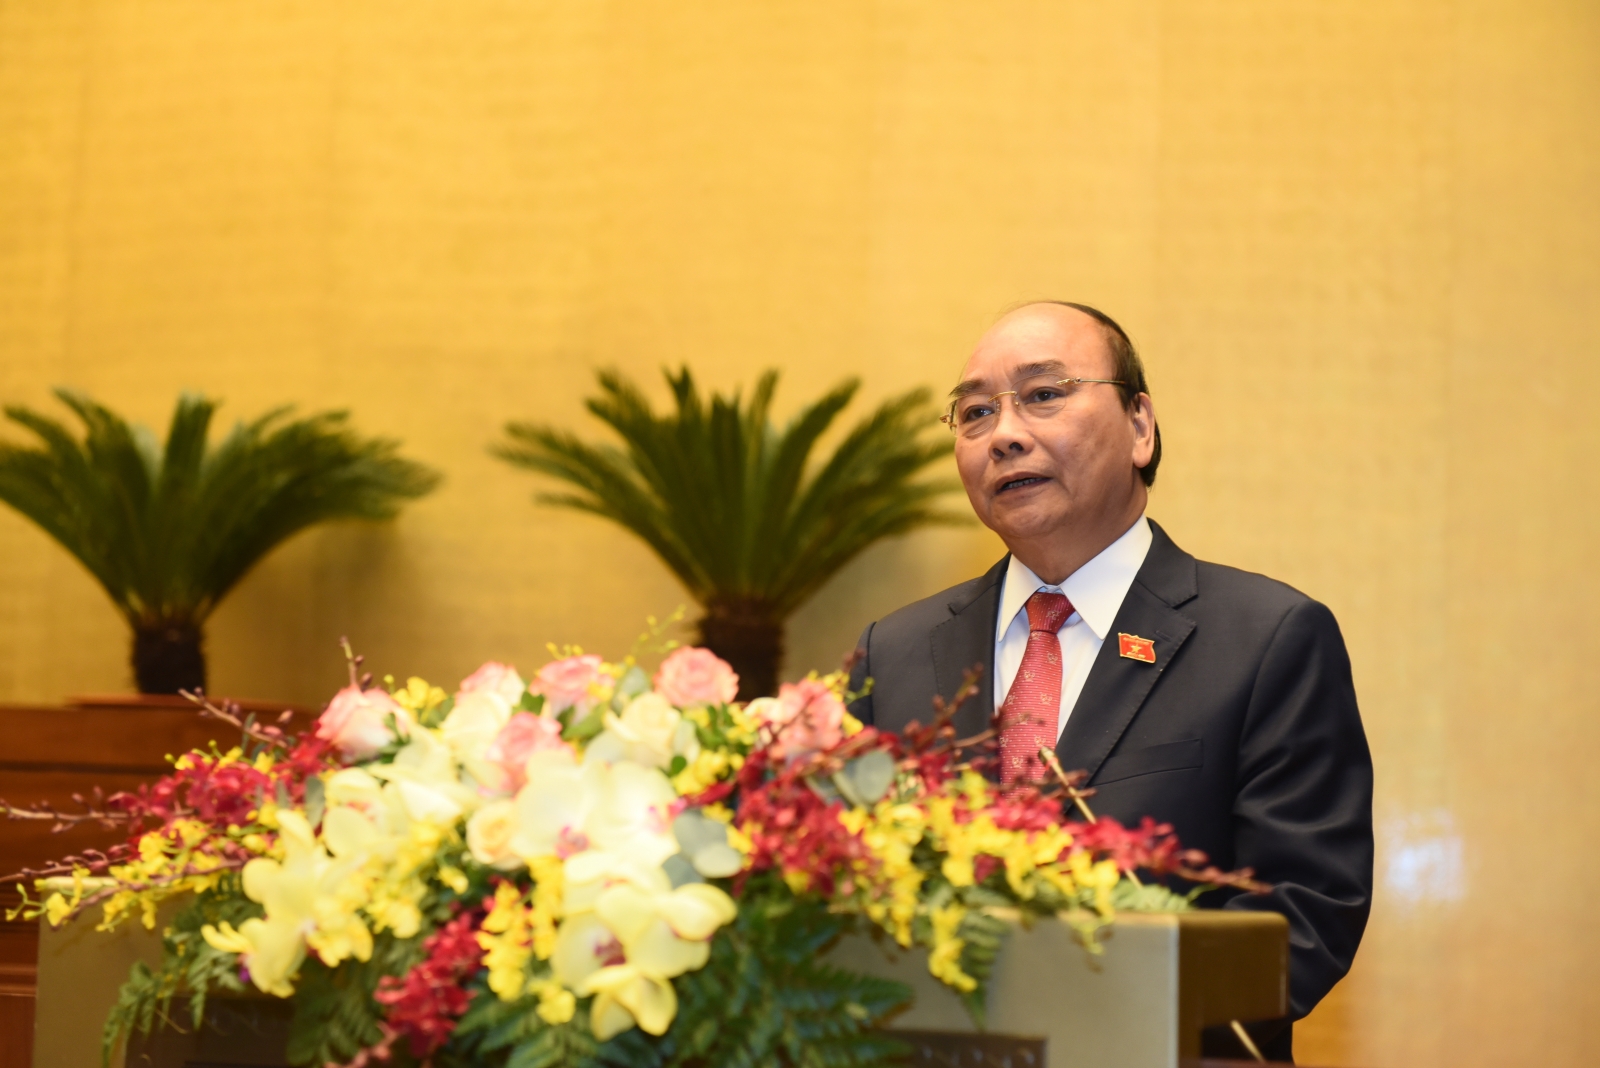 Thủ tướng Nguyễn Xuân Phúc: Giáo dục có sự tiến bộ ở tất cả các cấp học